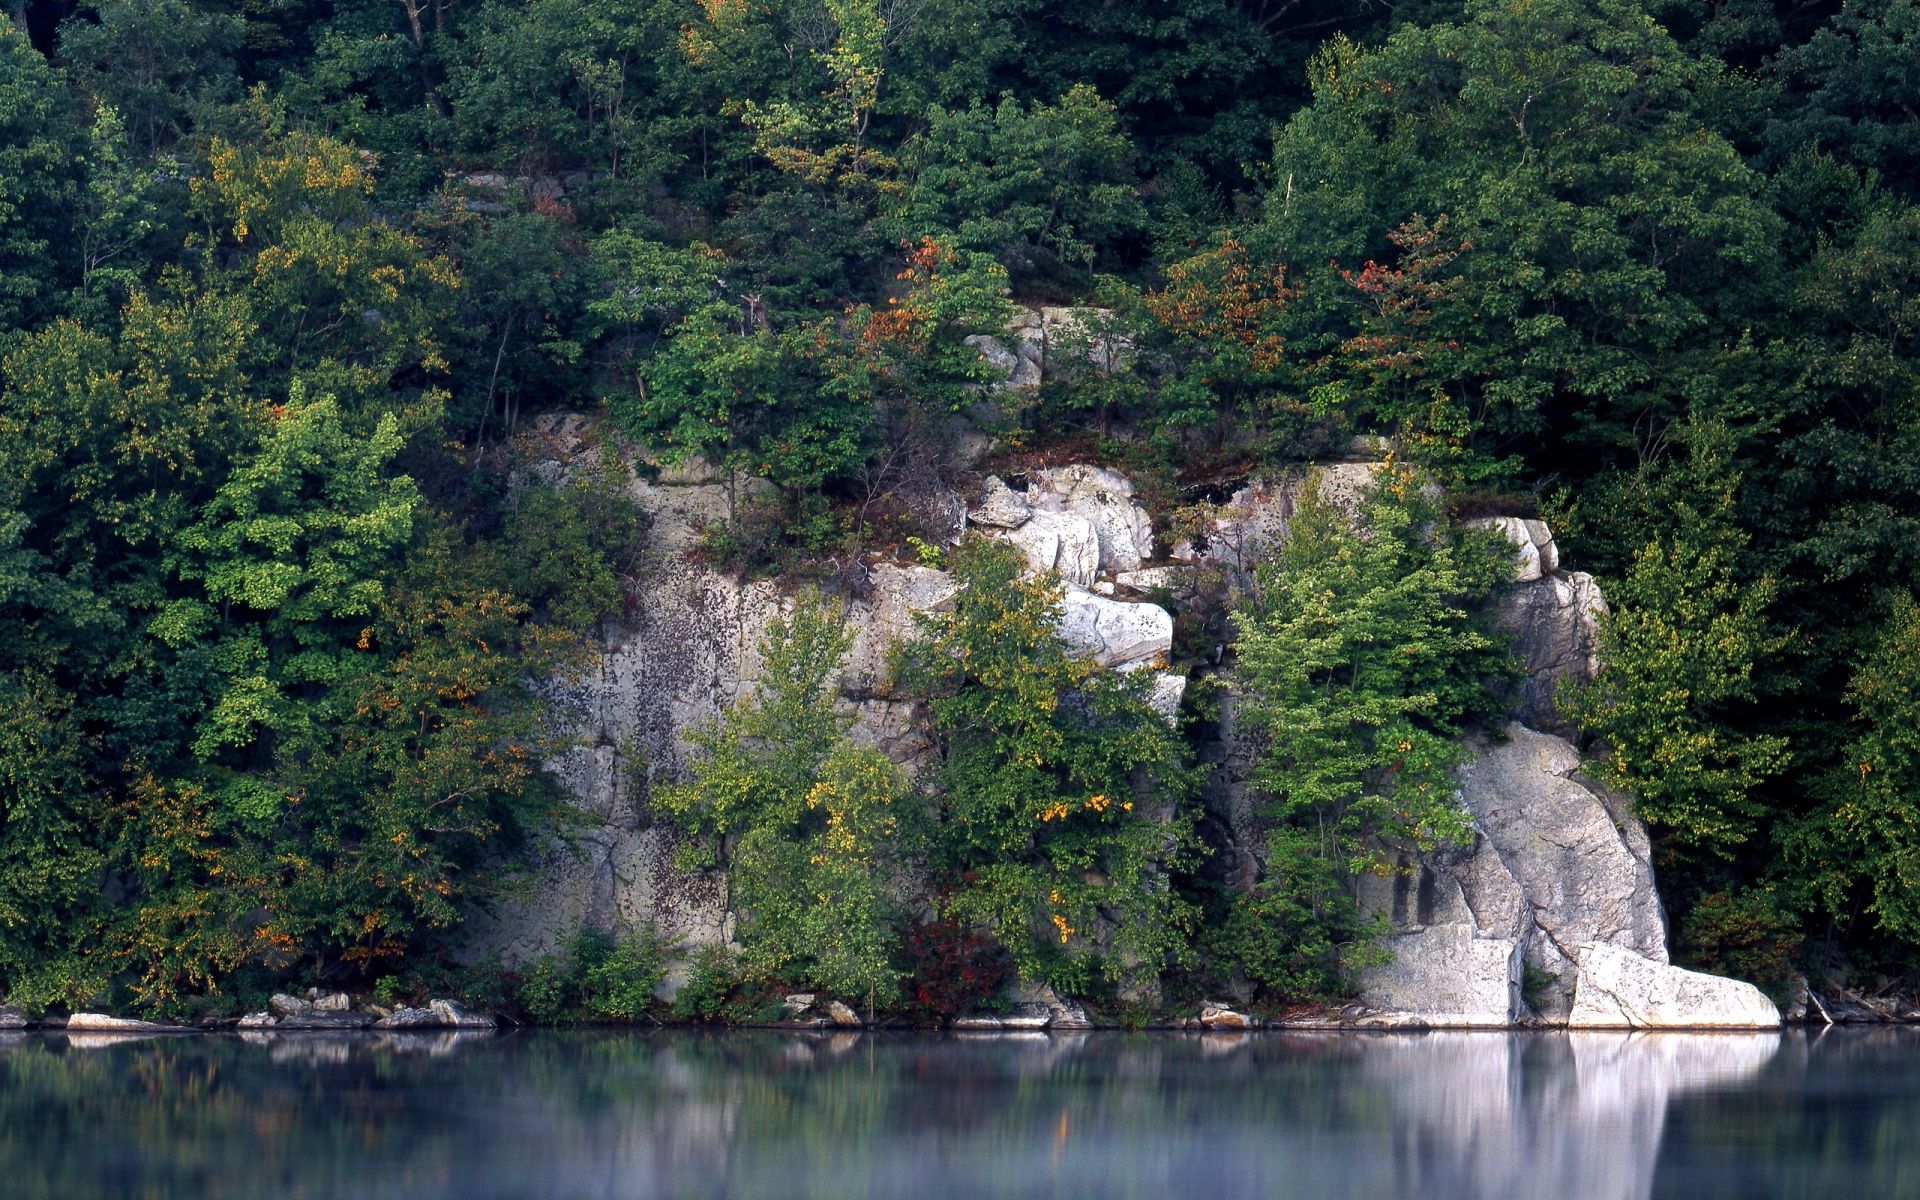 Картинки Скалы, деревья, озеро, растительность, гладкая поверхность воды фото и обои на рабочий стол